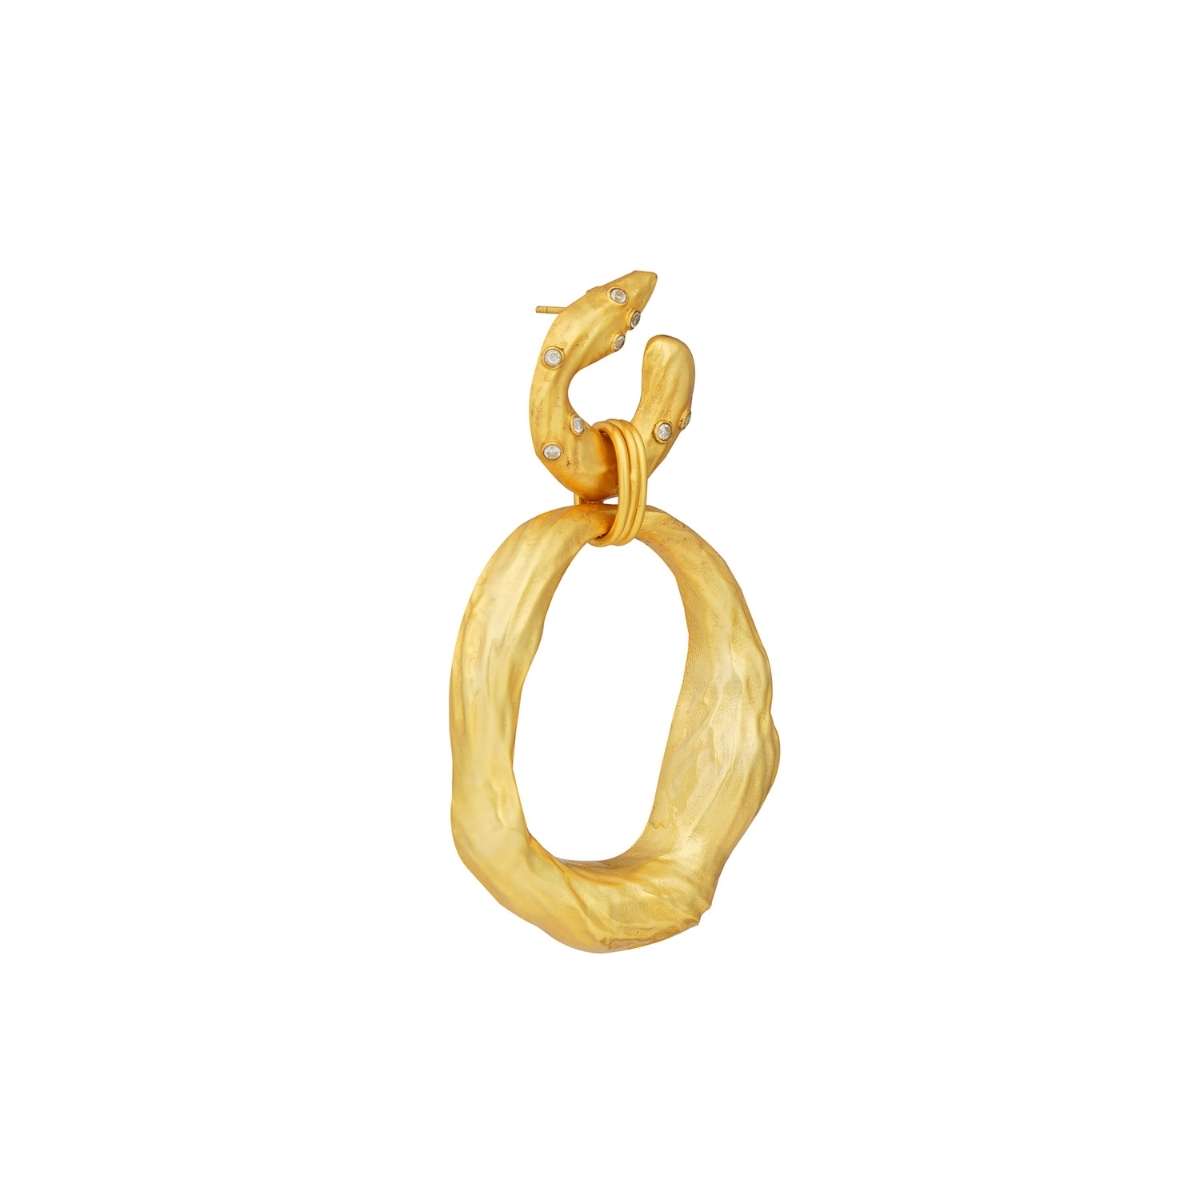 Buy Organic Rings Goldtone Statement Earrings Online in India | Zariin